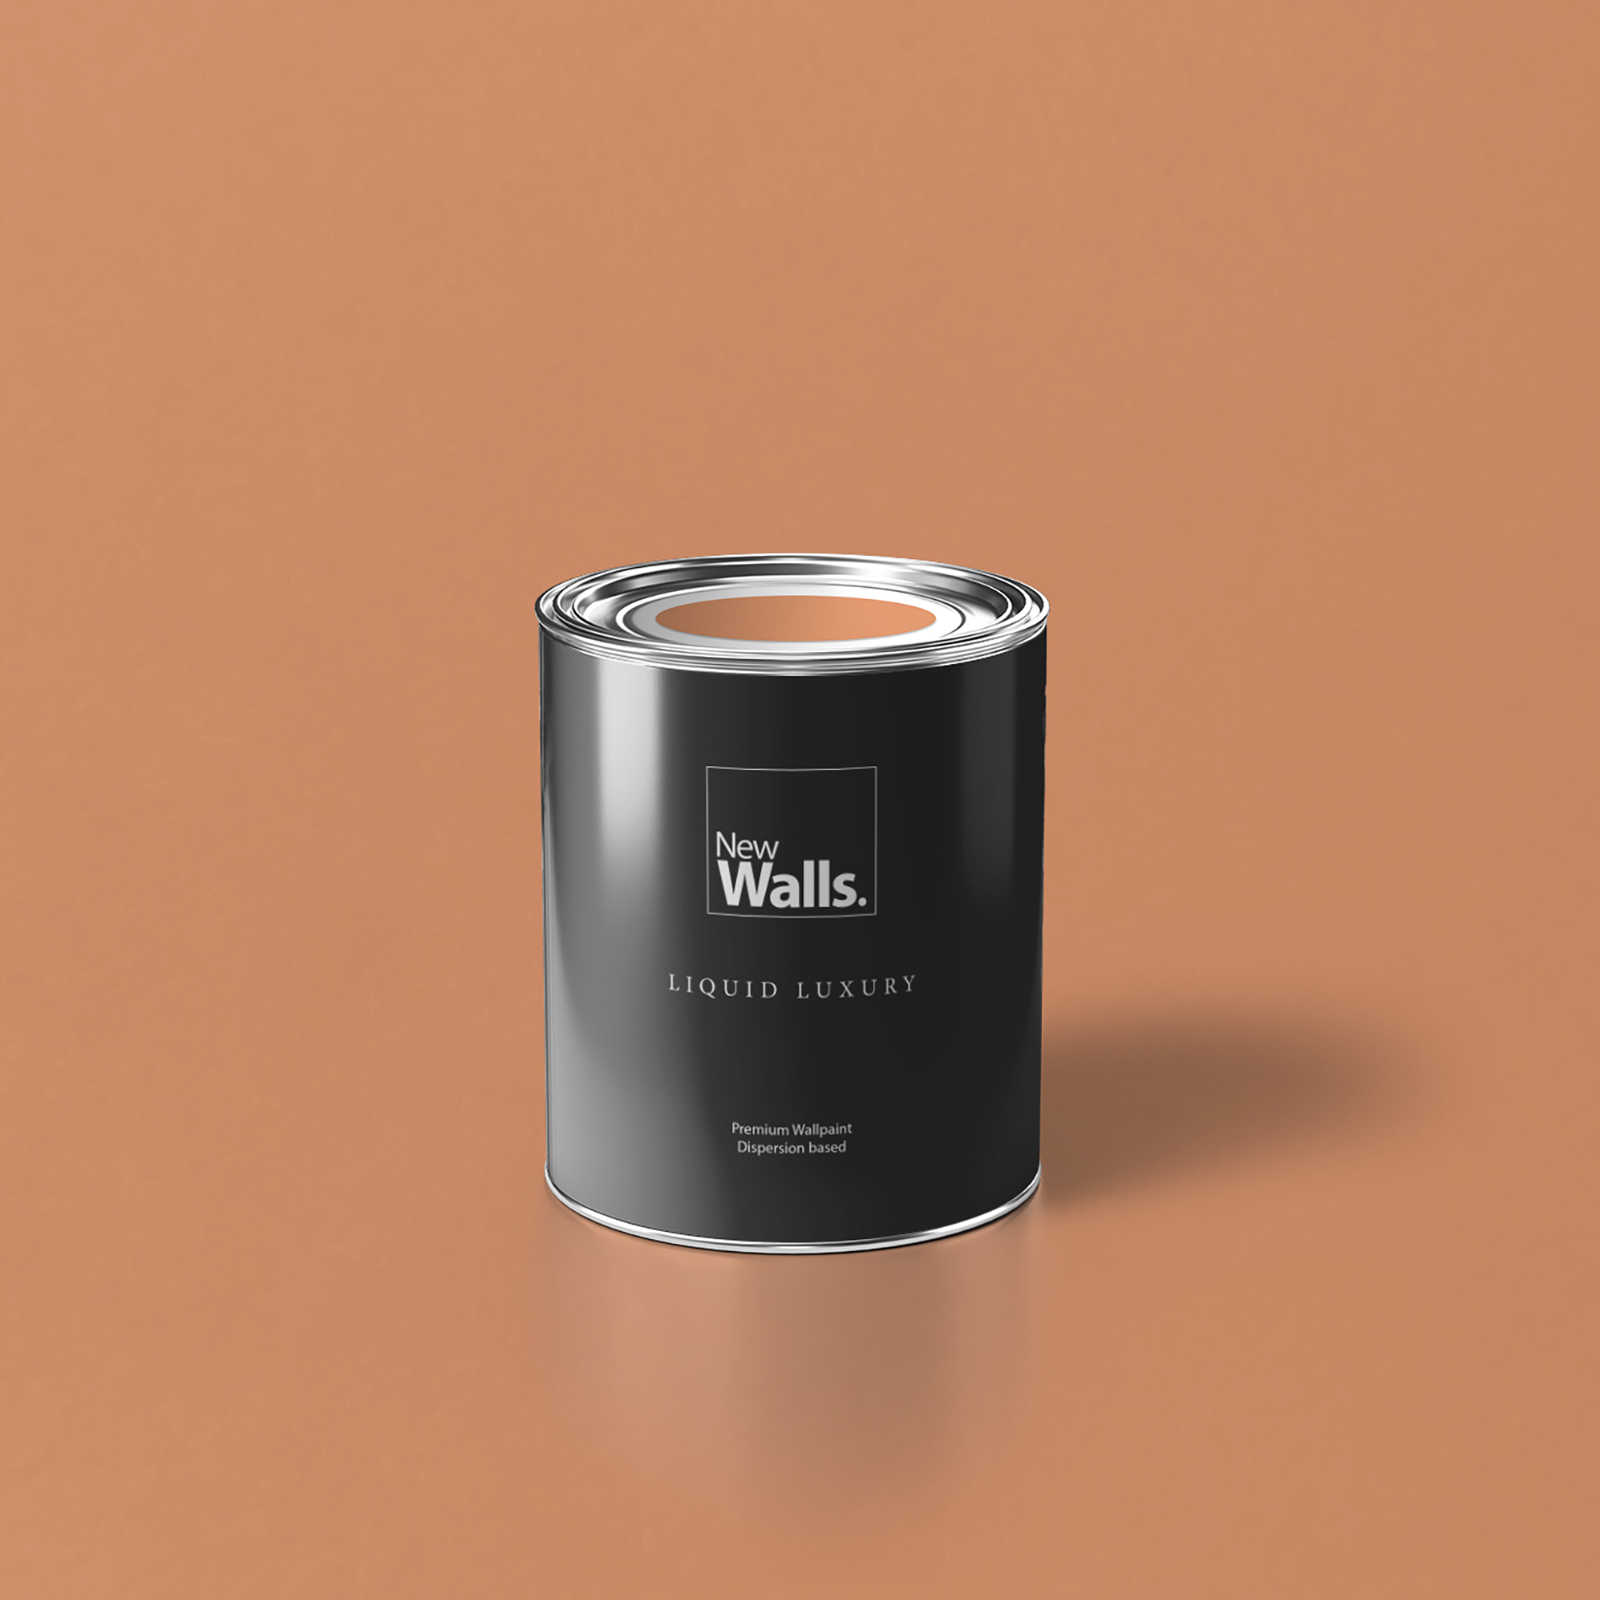         Premium Wandfarbe erfrischendes Apricot »Pretty Peach« NW902 – 1 Liter
    